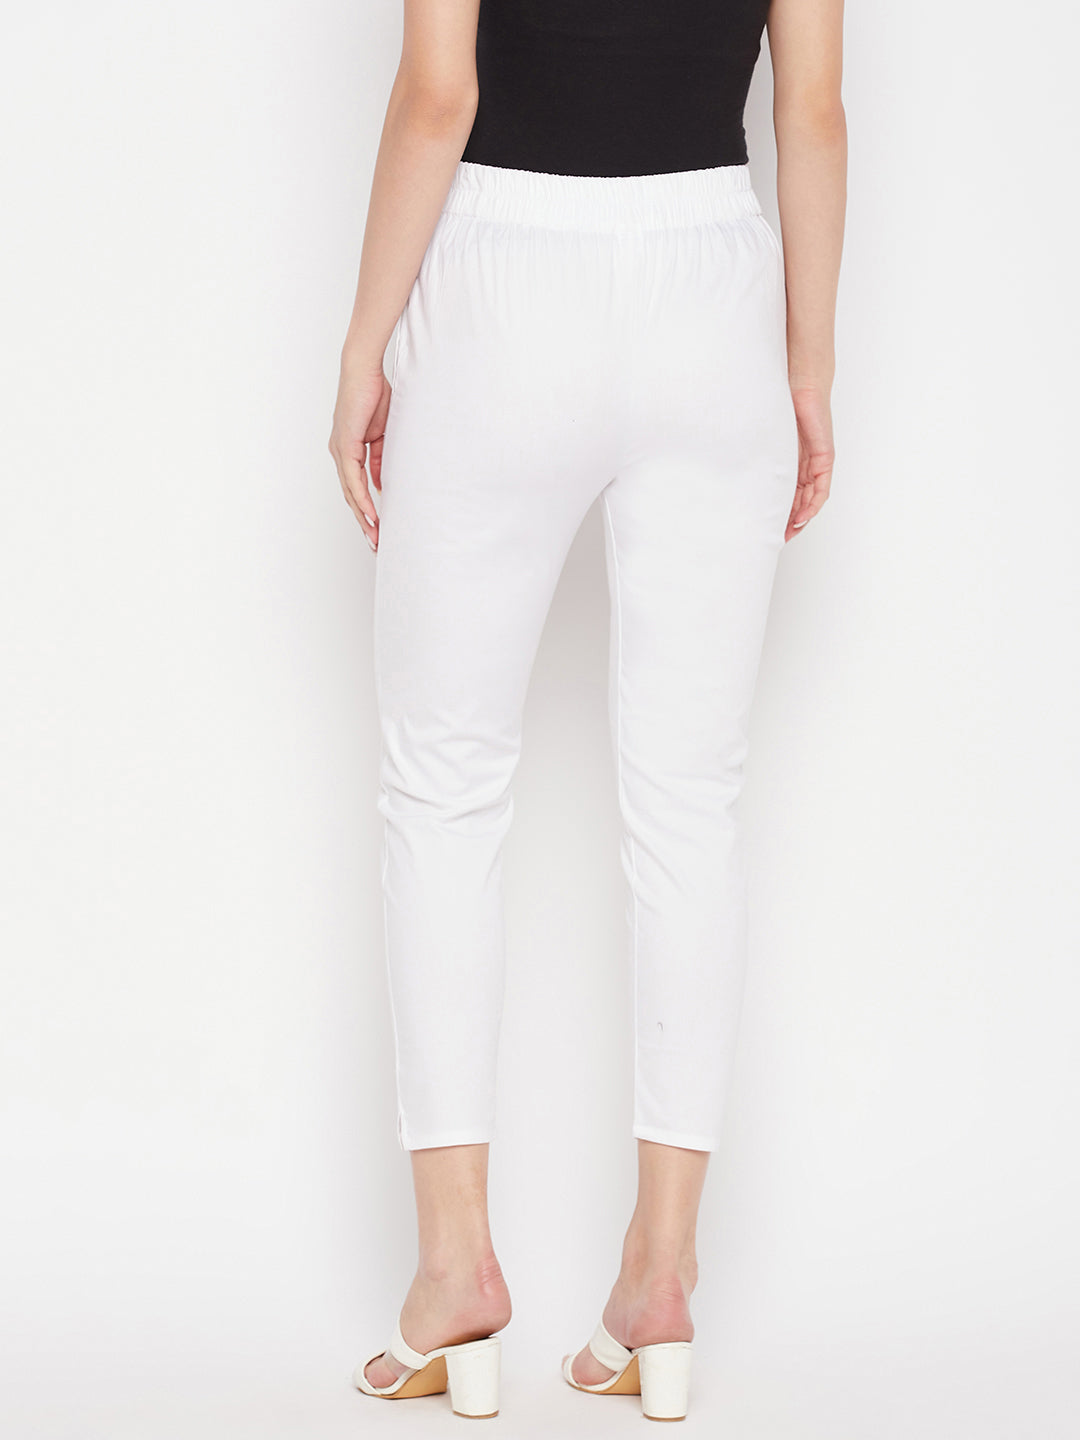 Clora White Solid Cotton Lycra Pant